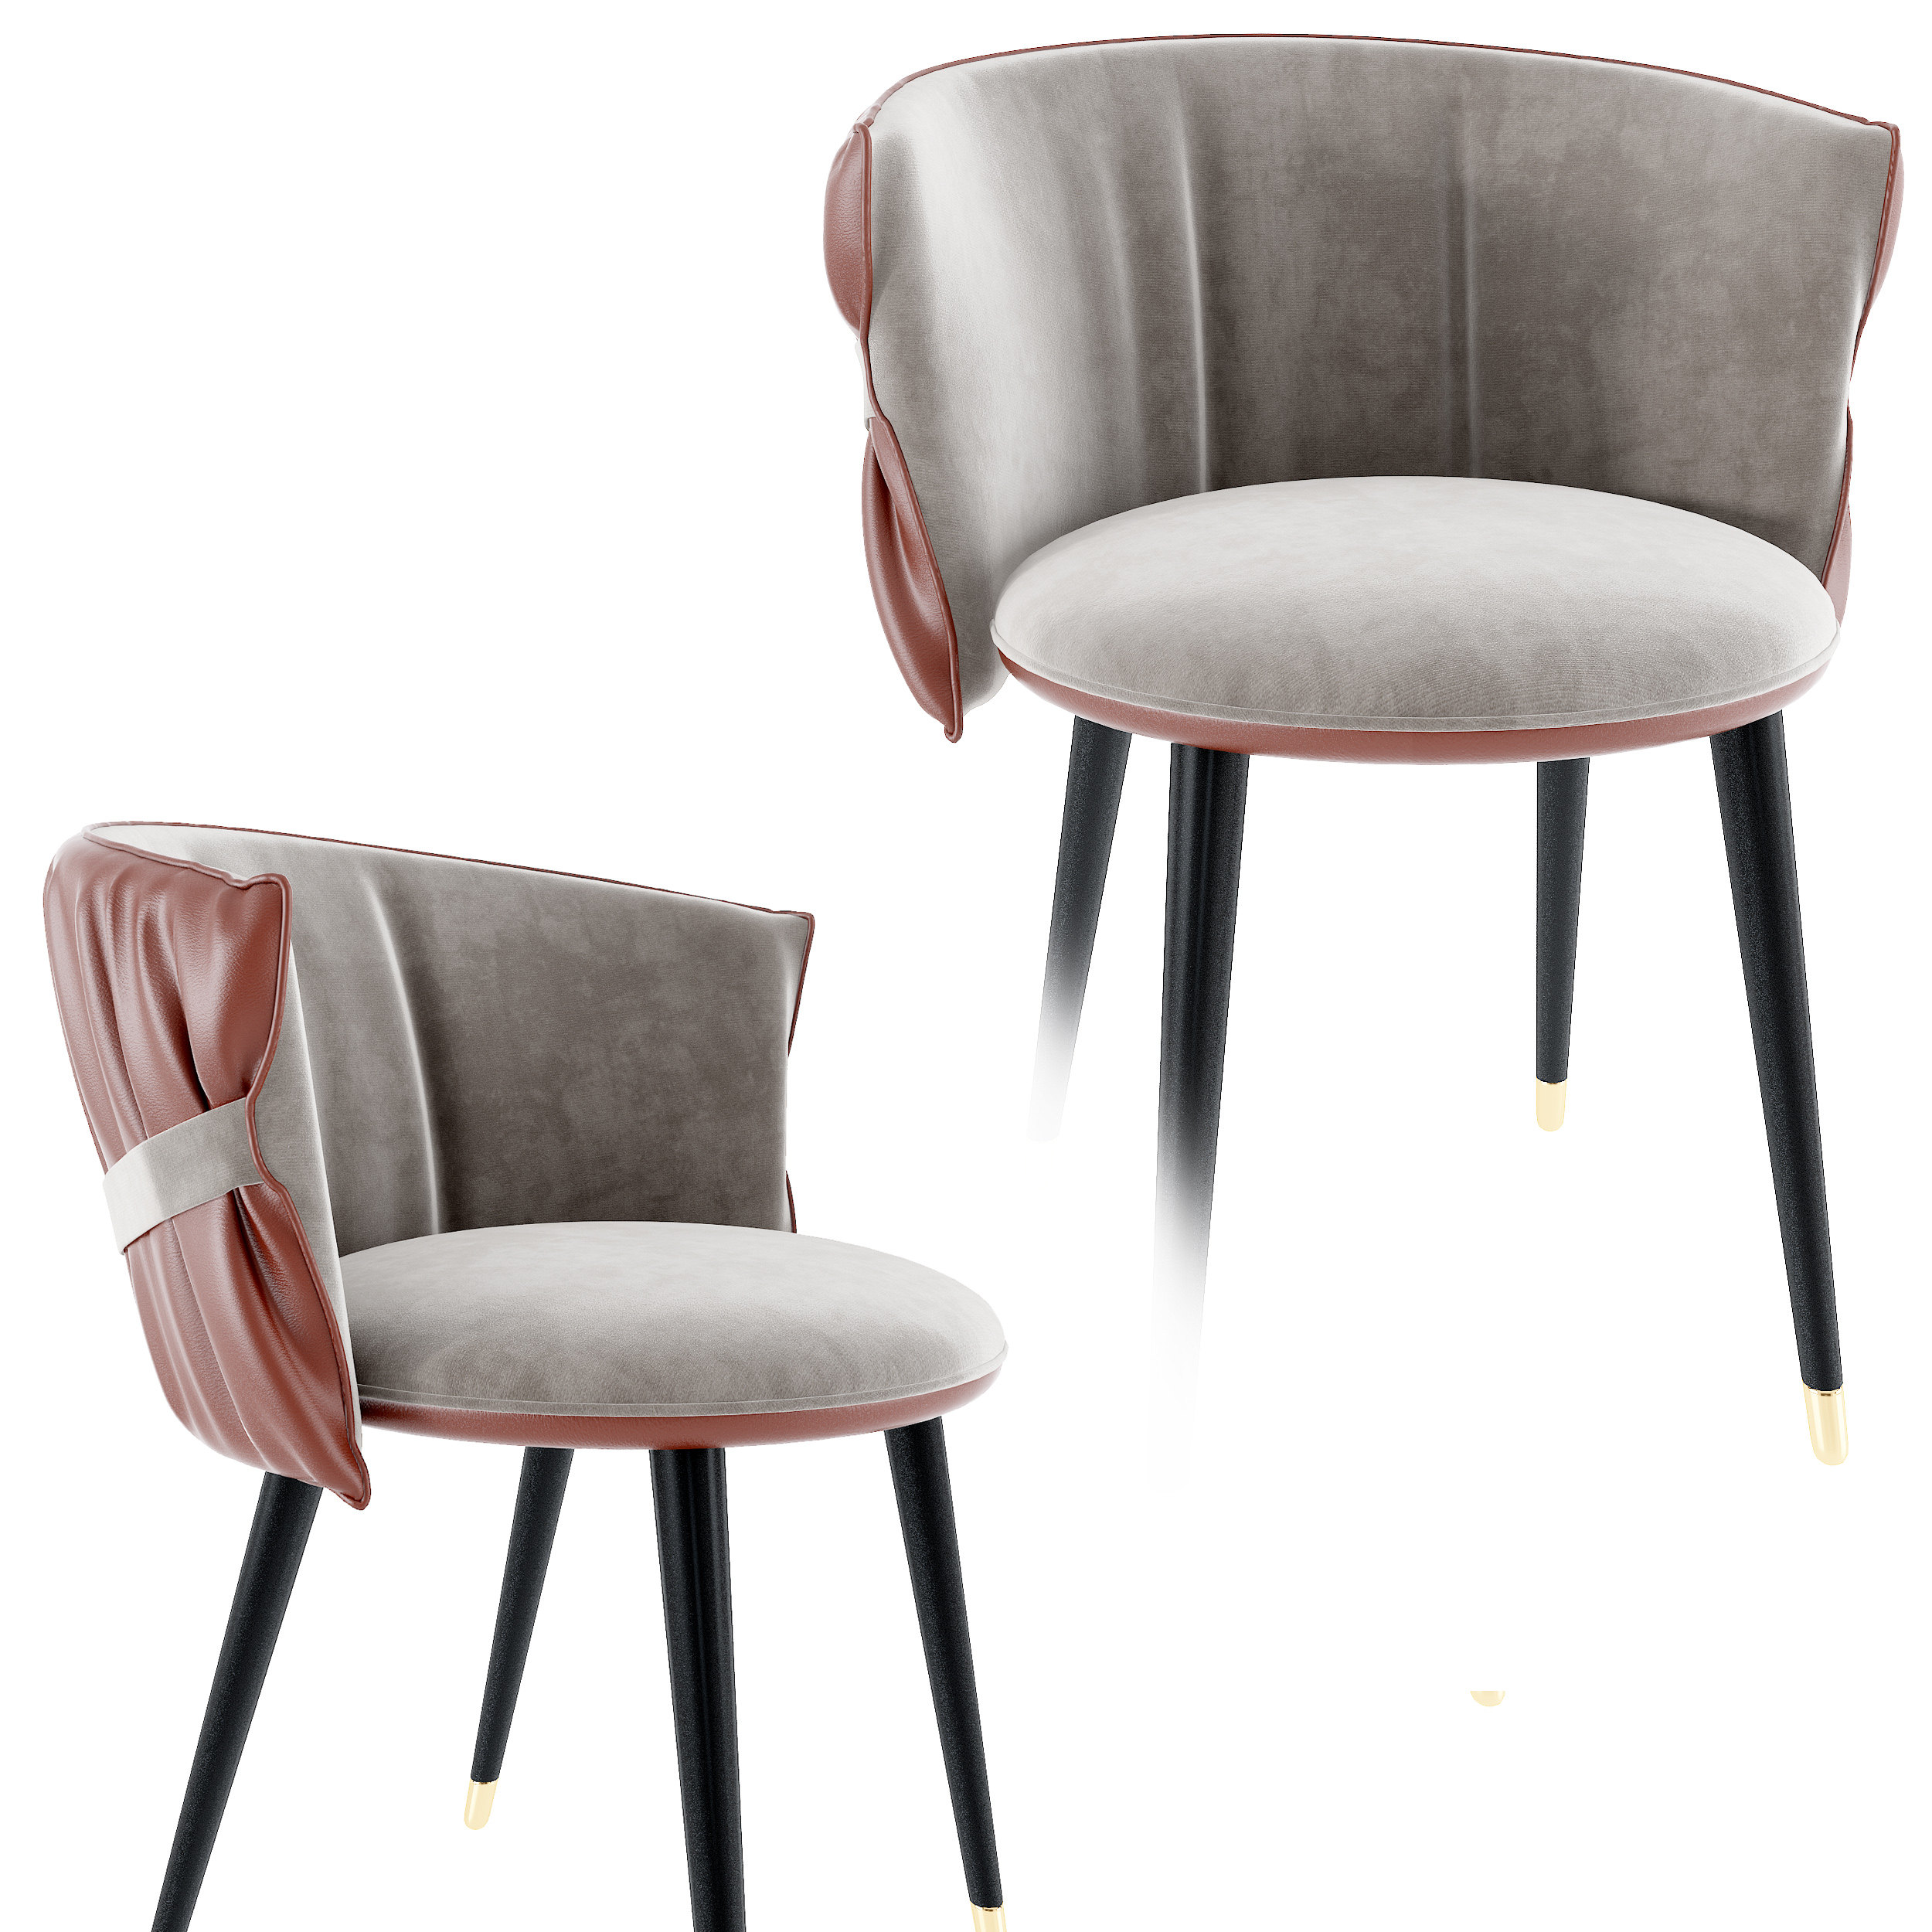 现代休闲椅,椅子,餐椅 3d模型下载